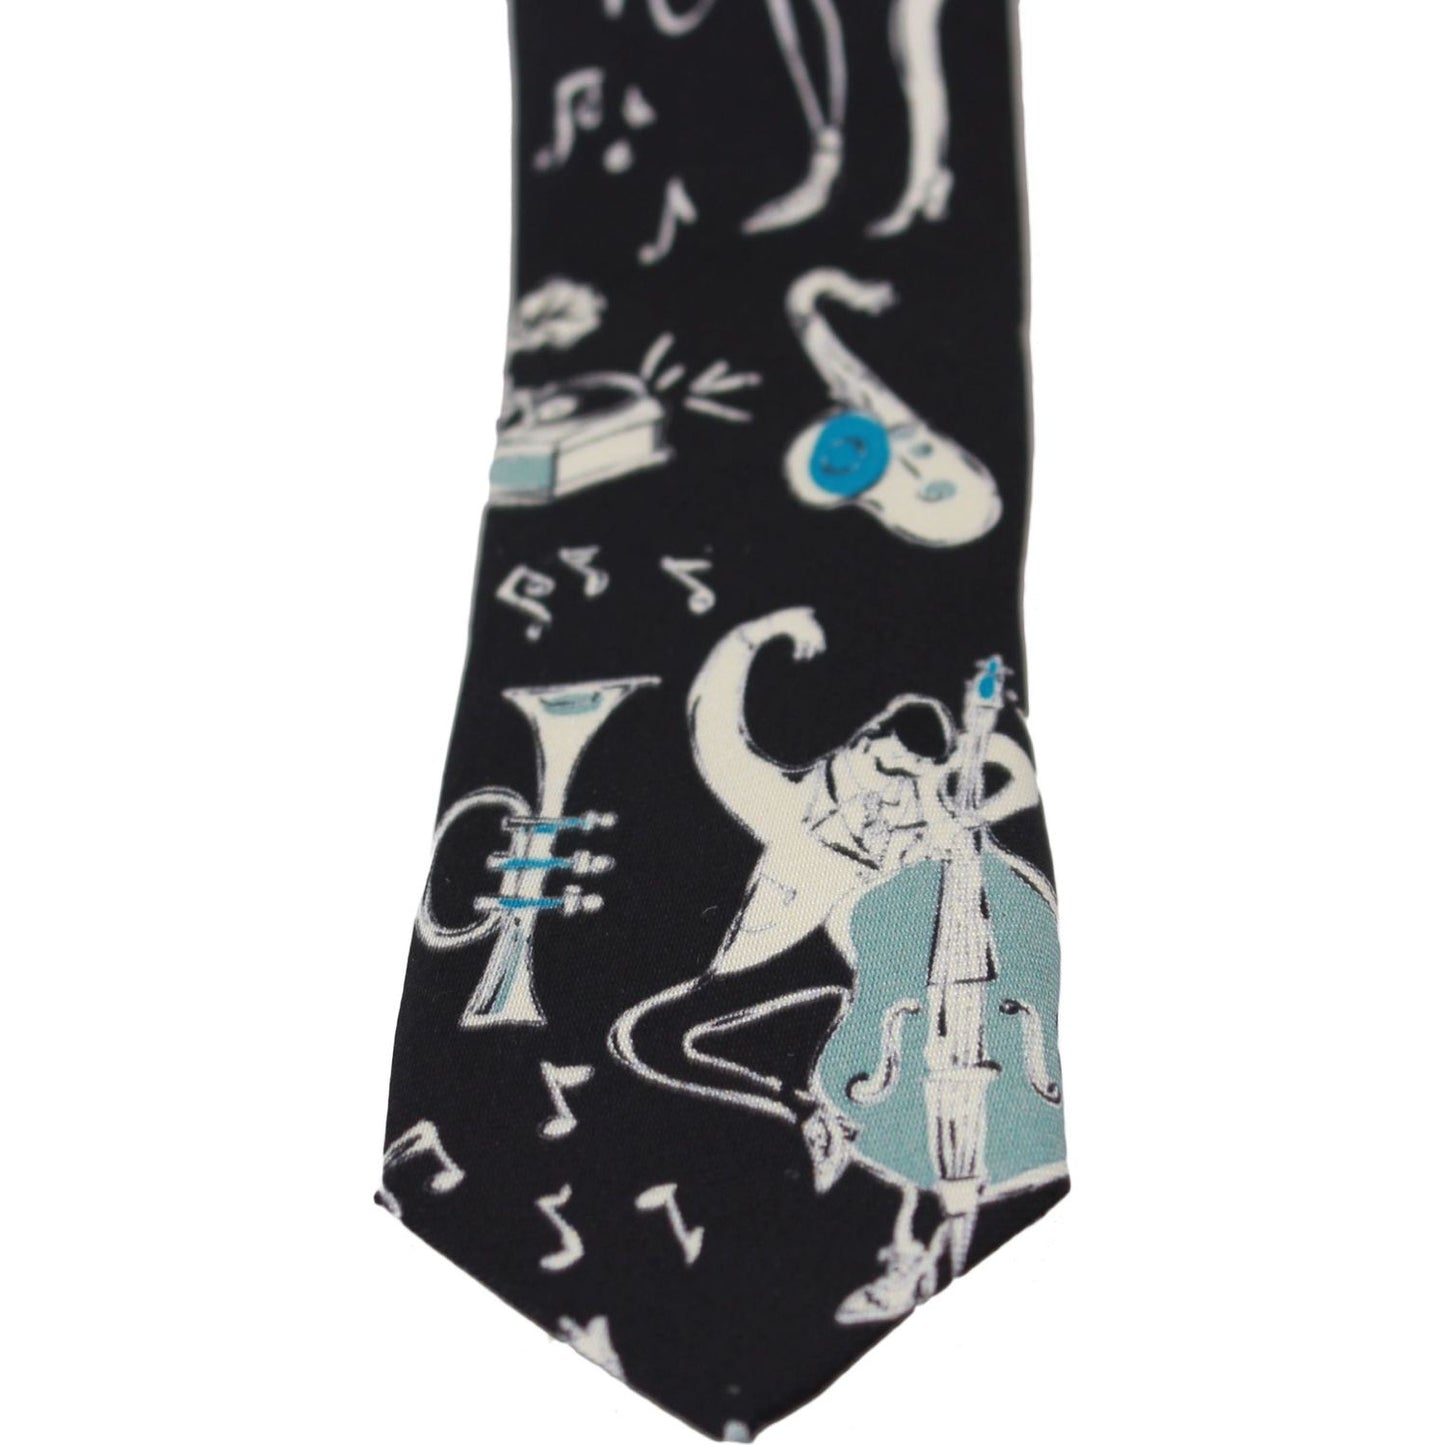 Dolce & Gabbana Elegant Black Music Pattern Silk Neck Tie Necktie black-100-silk-musical-isntrument-print-classic-tie IMG_1596-scaled-93d14c80-ad9.jpg